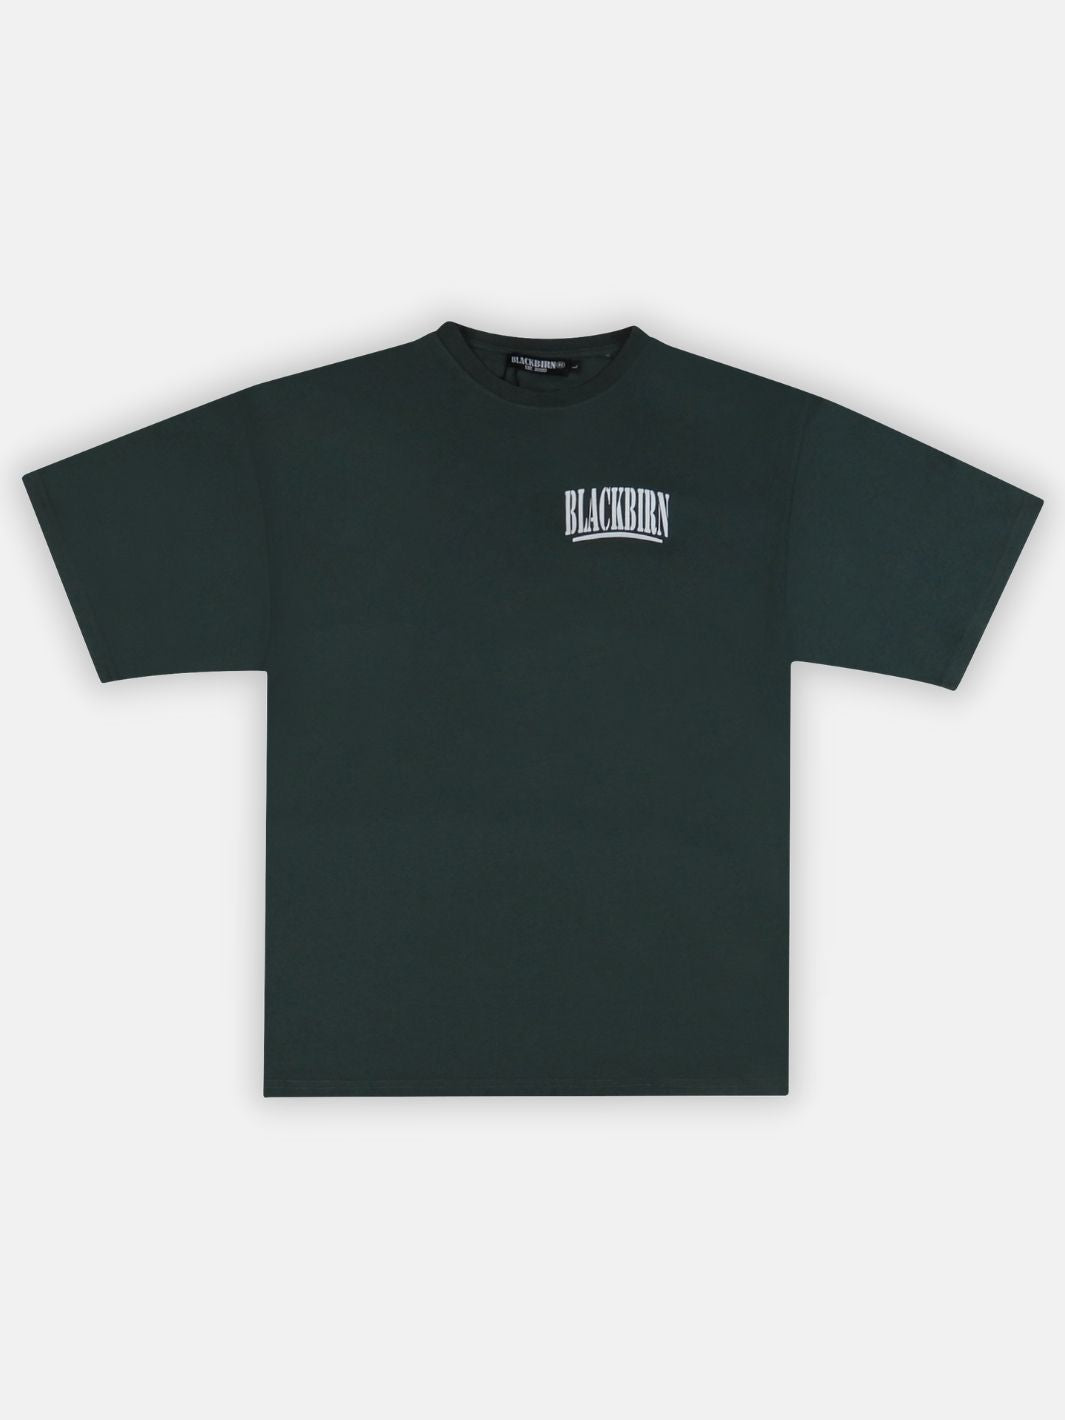 Grove T-Shirt - Blackbirn